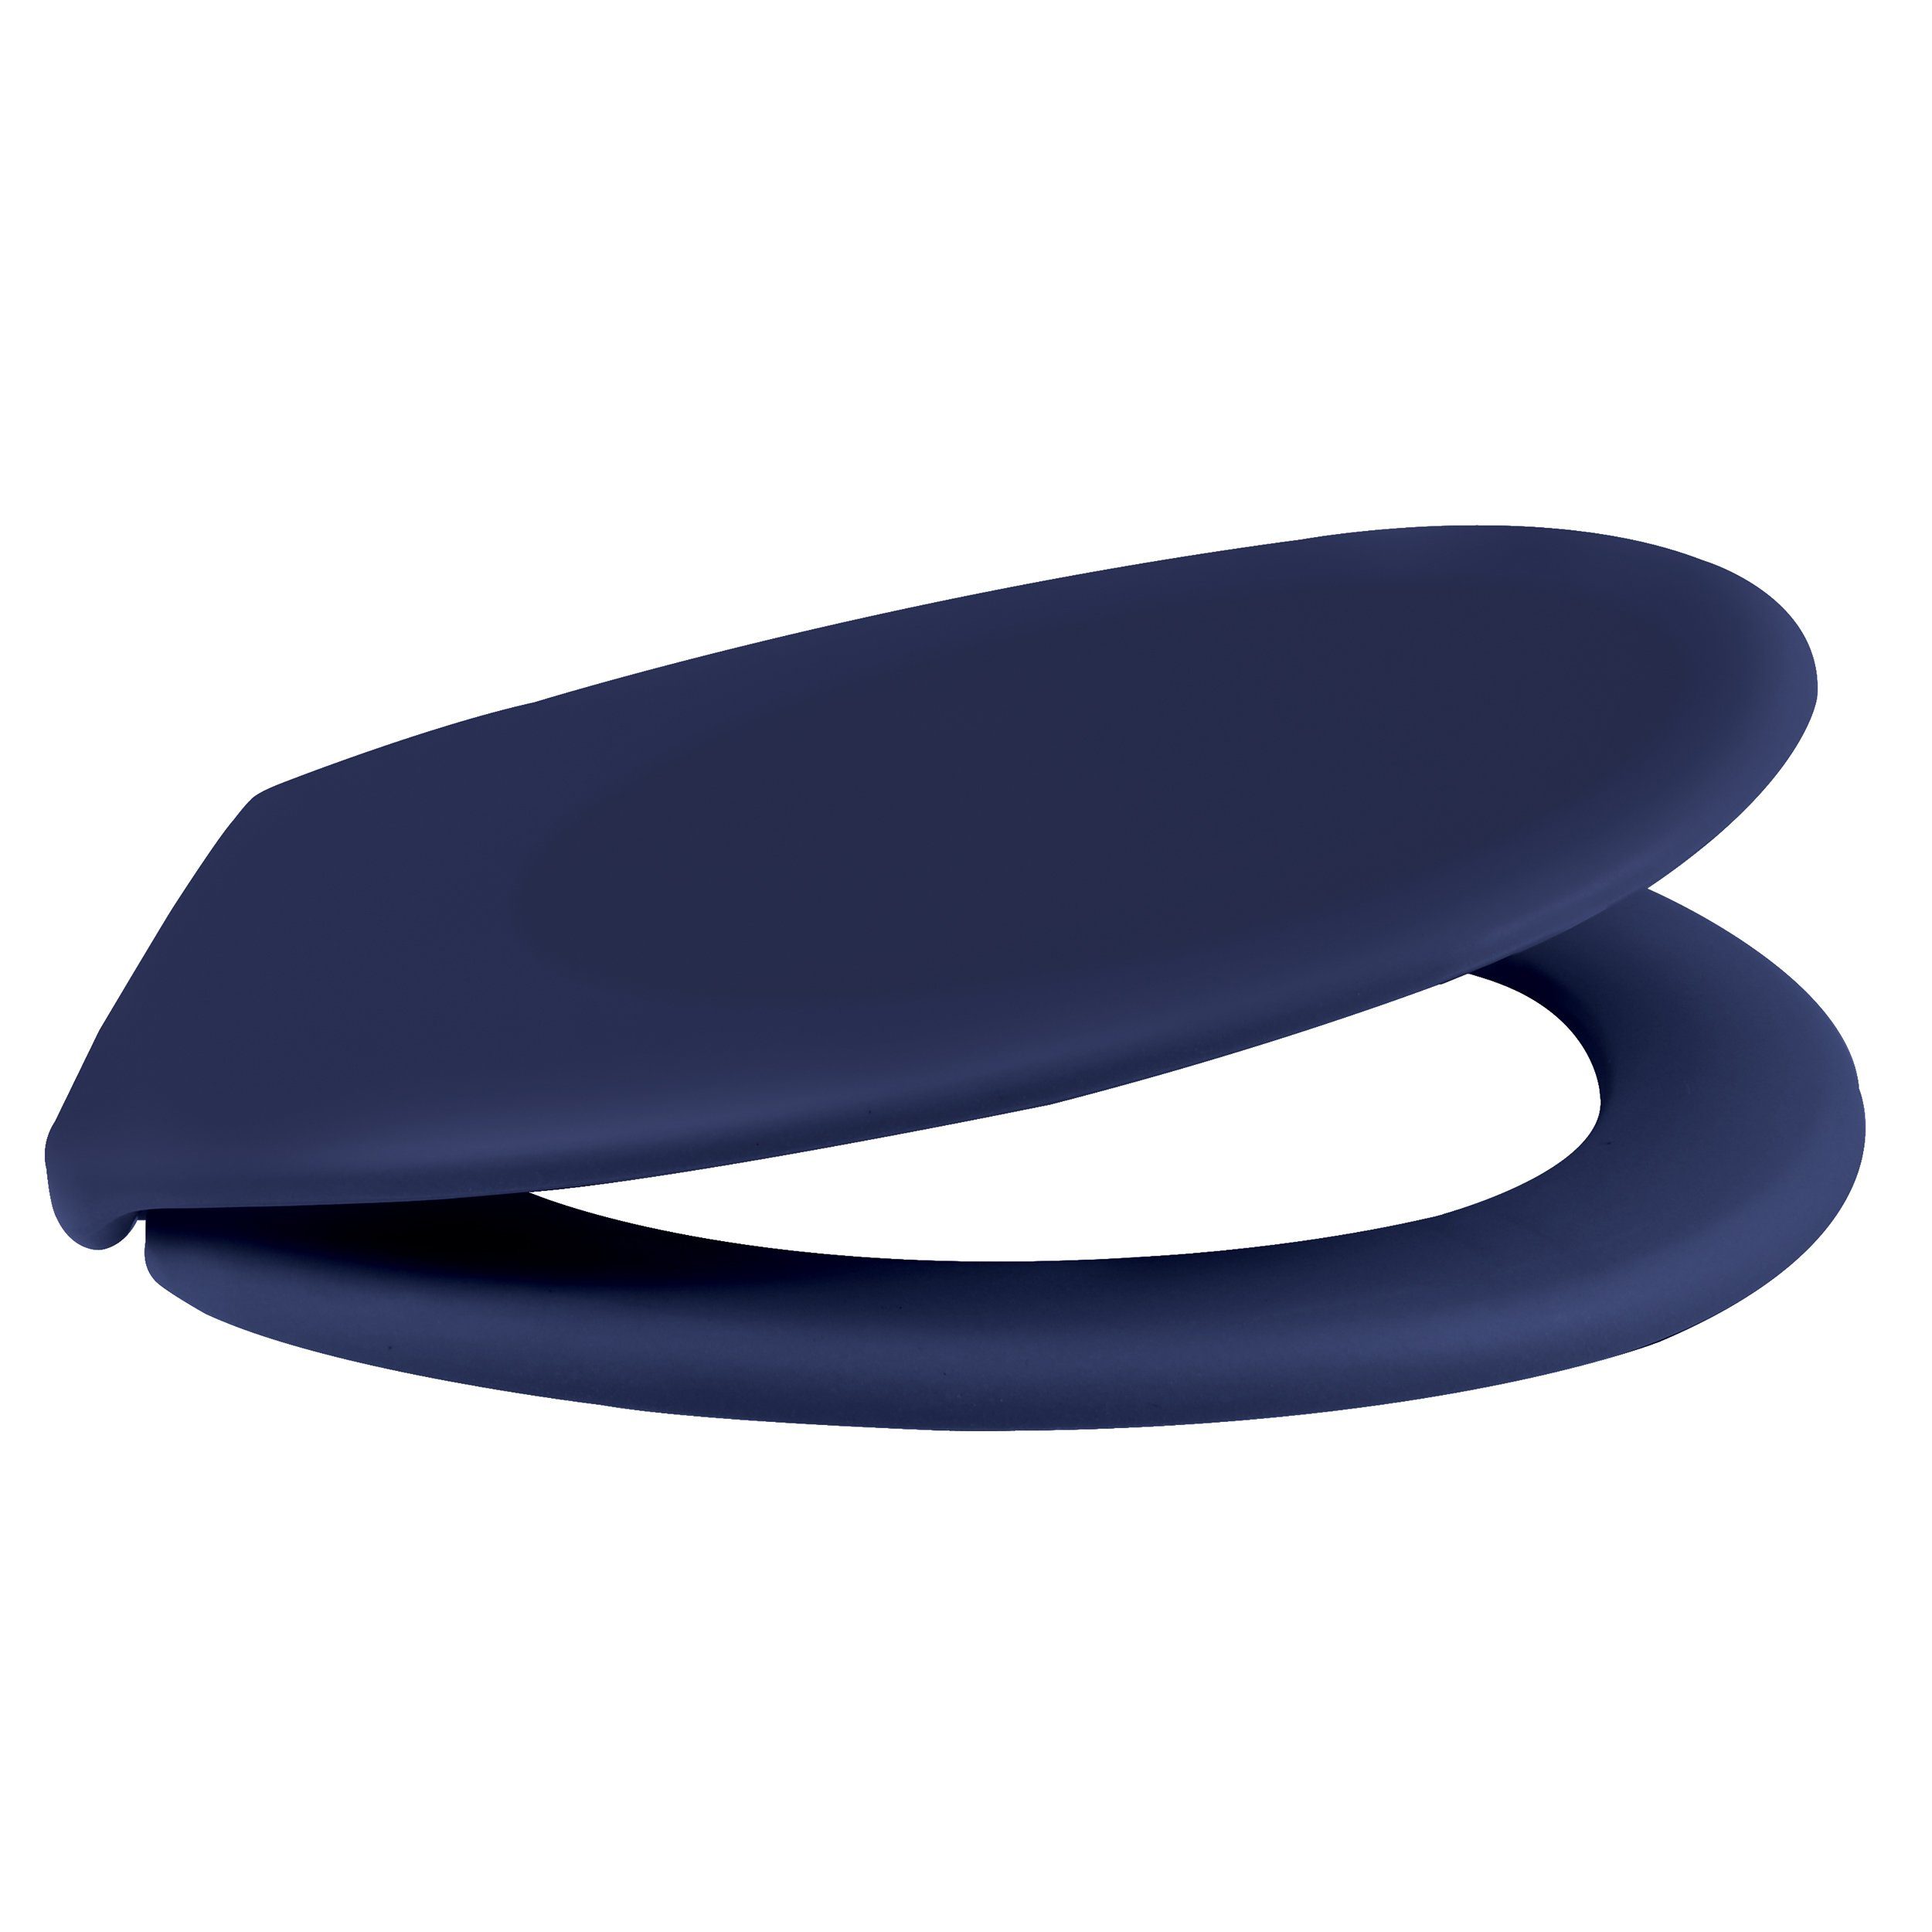 spirella WC-Sitz NEELA, Premium Toilettendeckel aus leichtem Duroplast Kunststoff, hohe Stabilität, langlebig, bruchsicher, Soft Close Absenkautomatik, oval, neue Trendfarben in angesagter matt Optik, blau